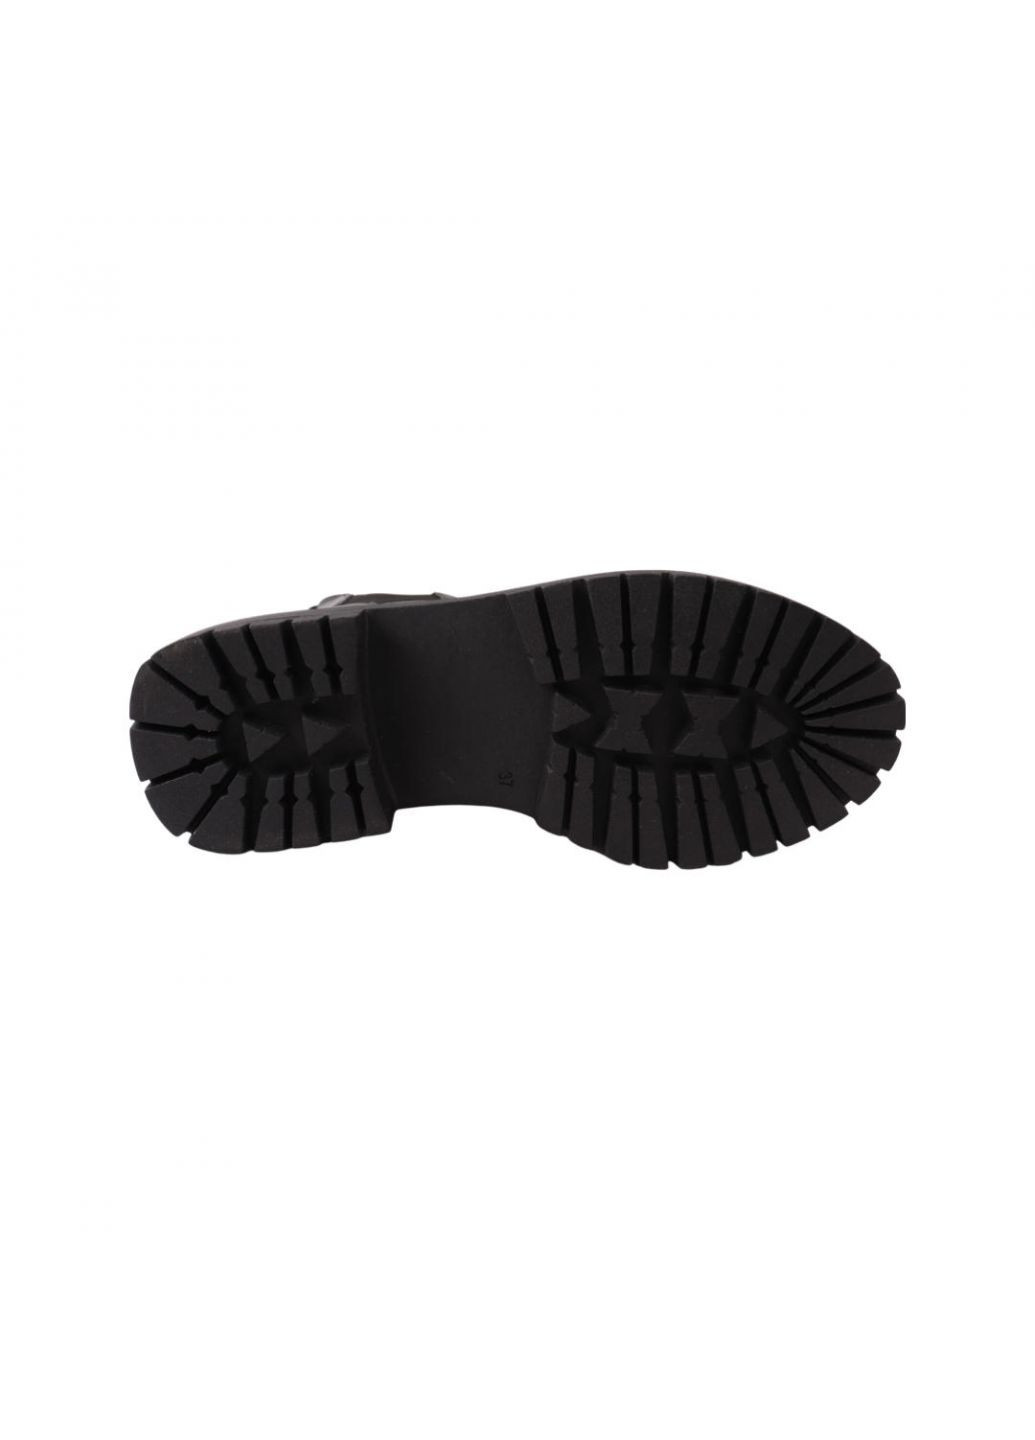 ботинки женские черные натуральная кожа Tucino